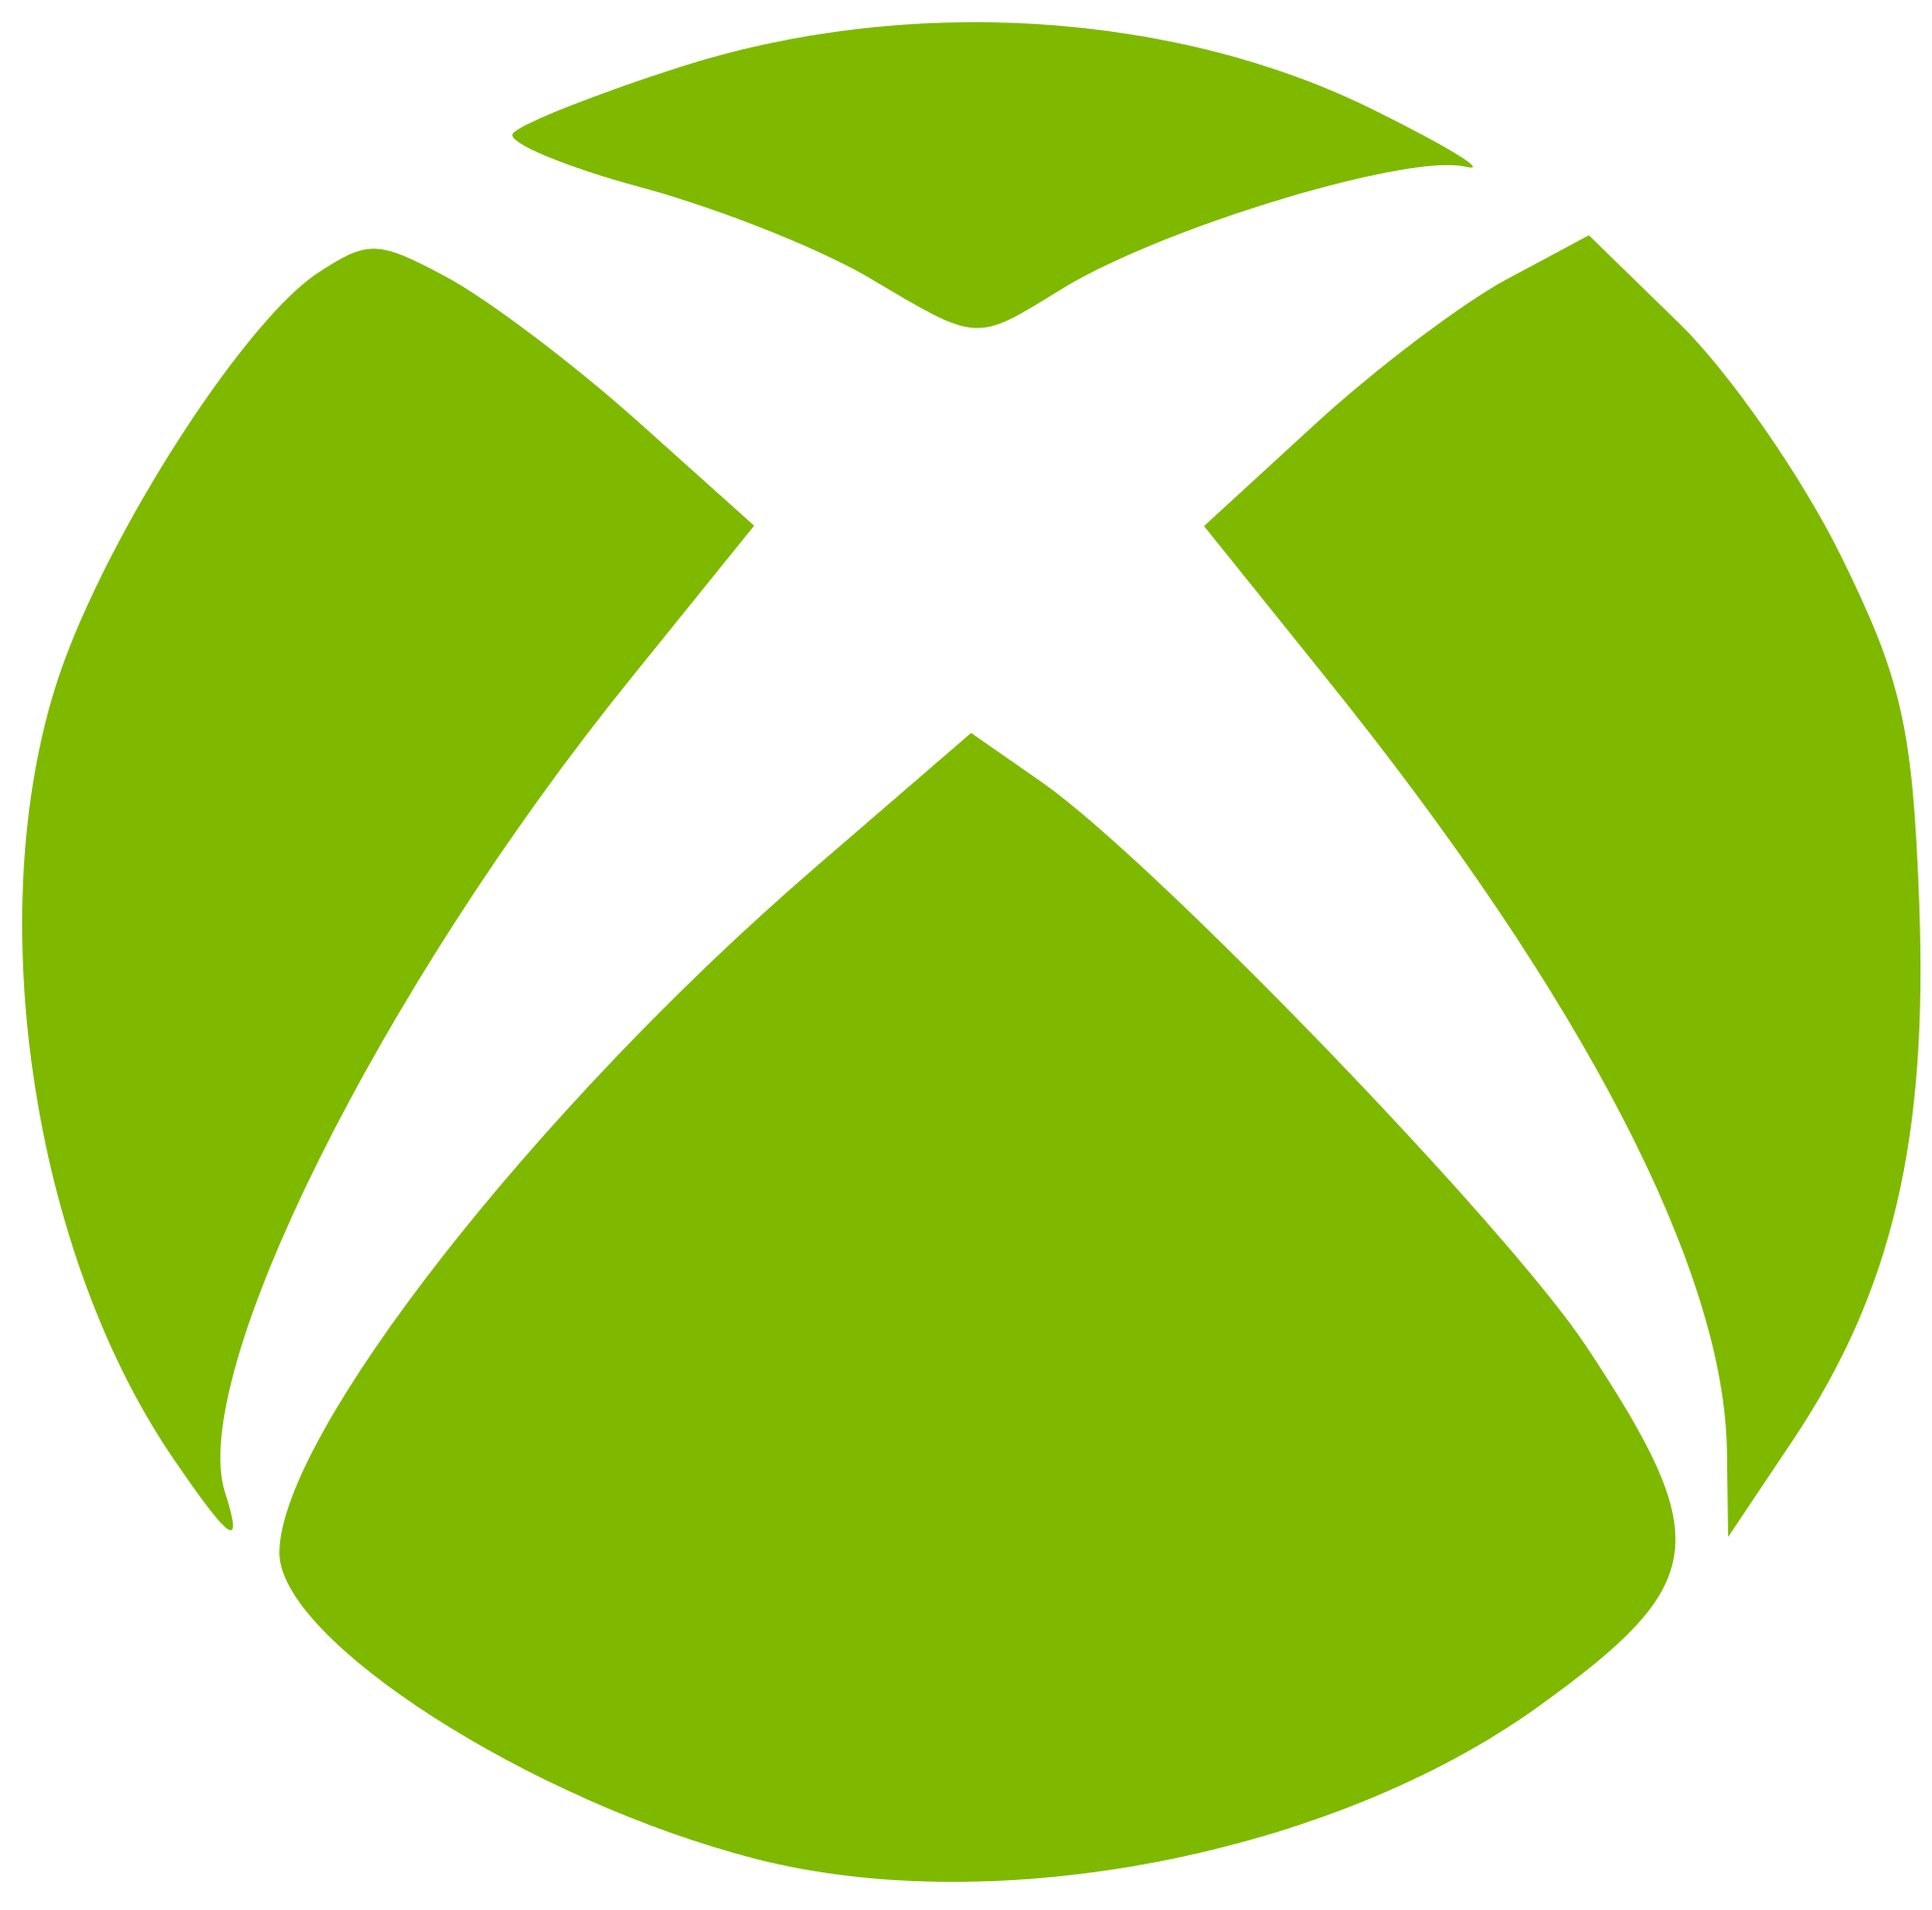 The Xbox Company Logo